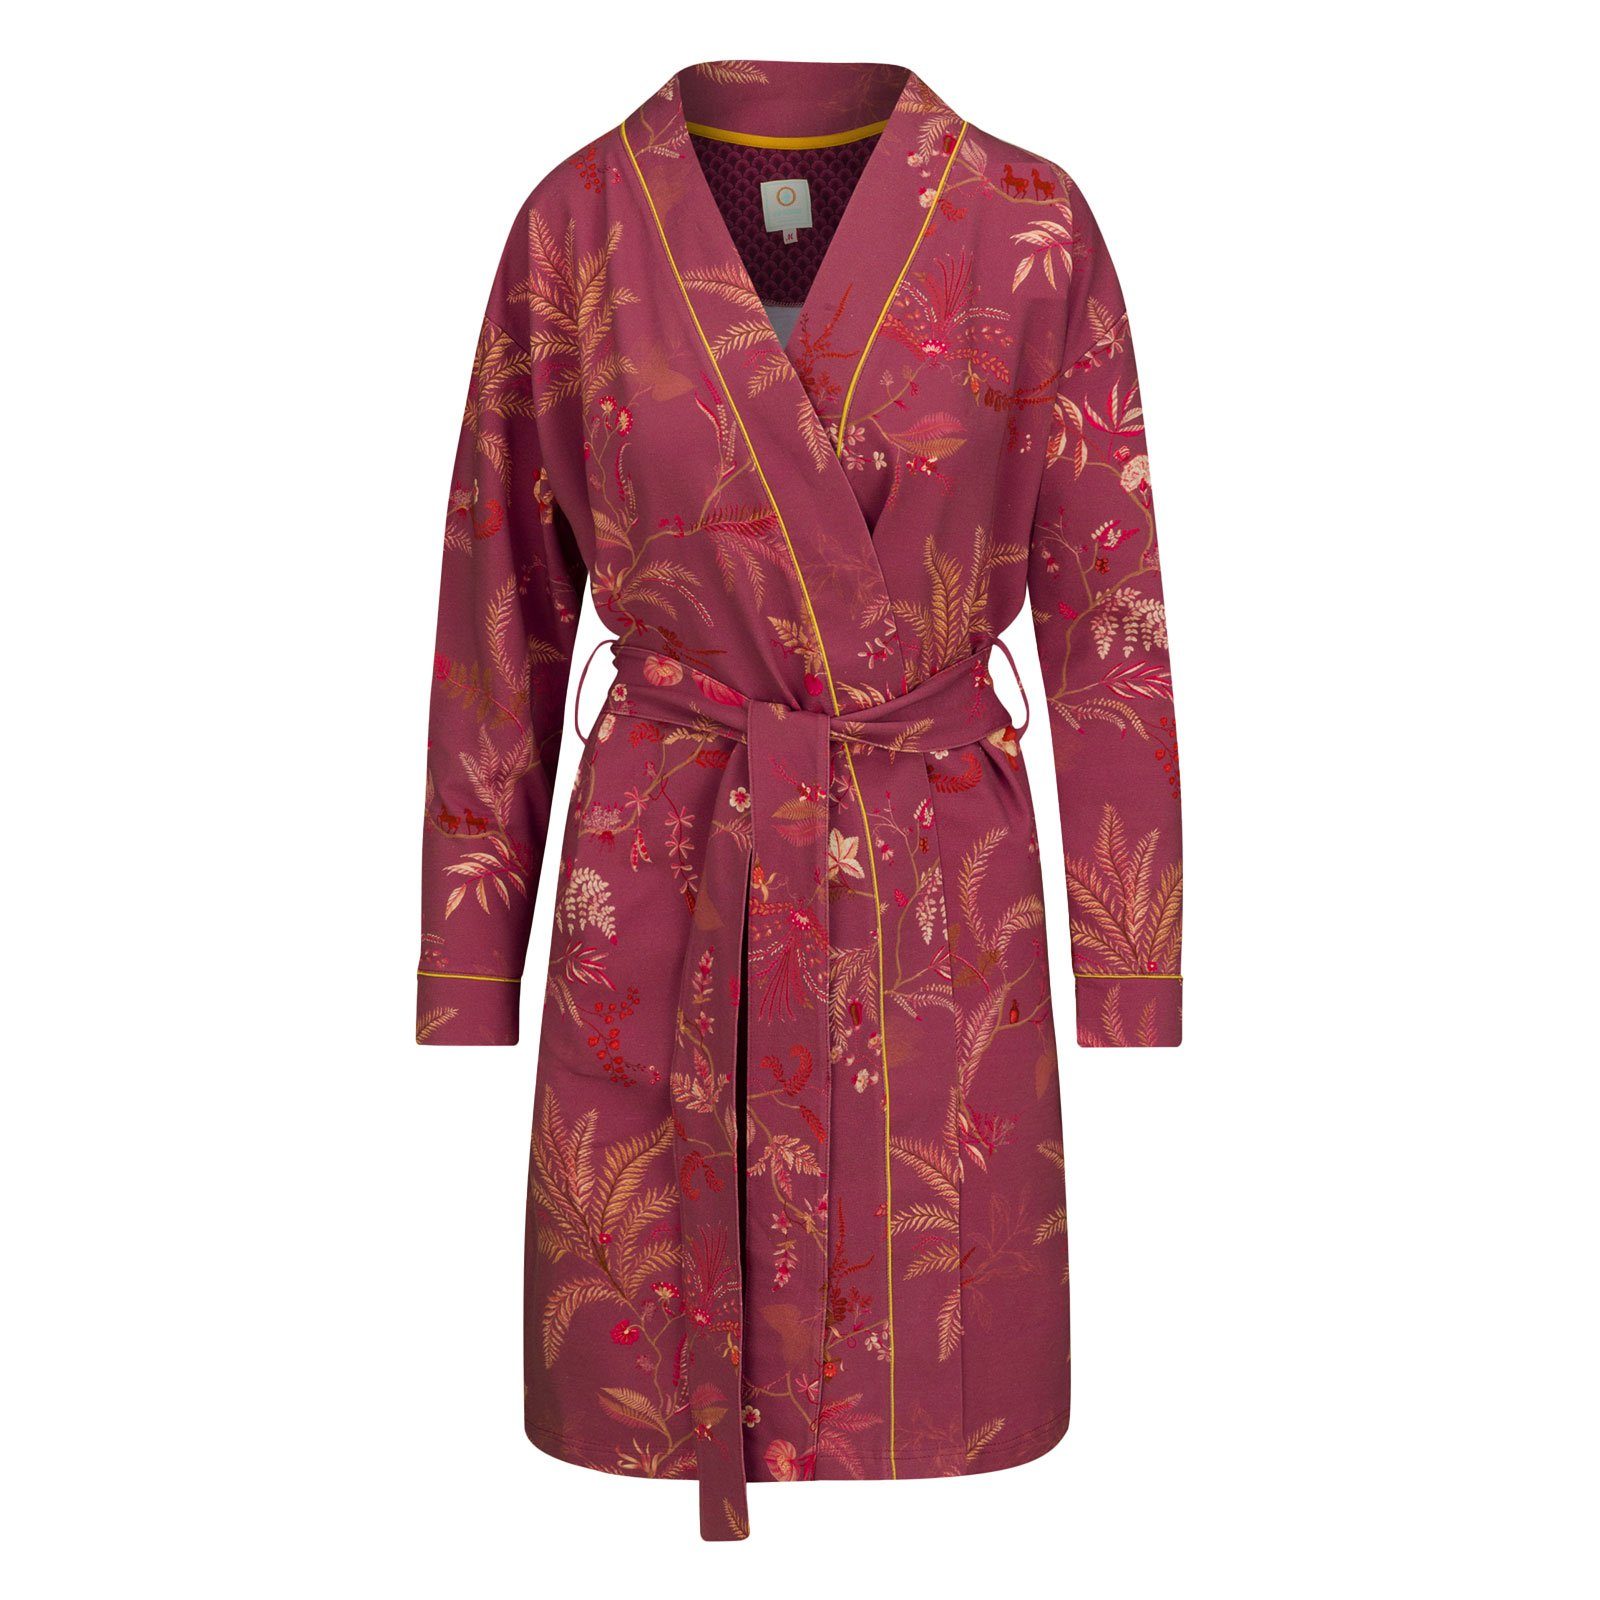 Baumwolle, Kimono isola binden, French weichem mit Isola, breitem aus zum knielang, Gürtel PiP Bindegürtel, Terry pink Studio Ninny